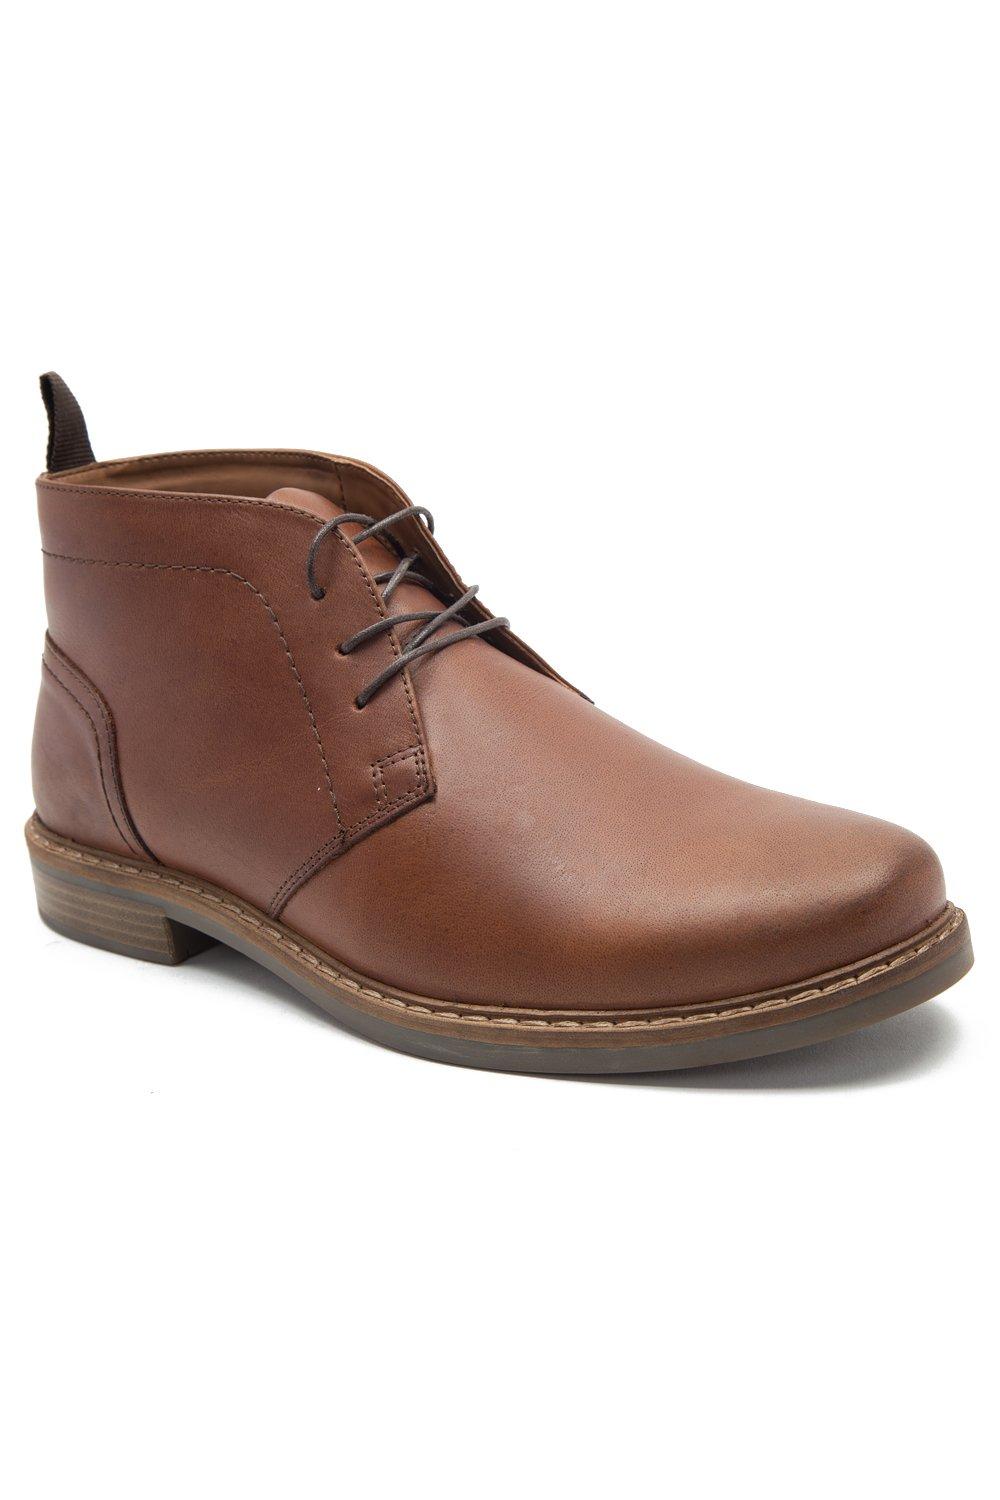 Кожаные ботильоны 'Dallas' Desert Chukka Thomas Crick, коричневый мужские повседневные ботинки уличные короткие ботинки модные классические удобные дышащие кроссовки вулканизированная подошва